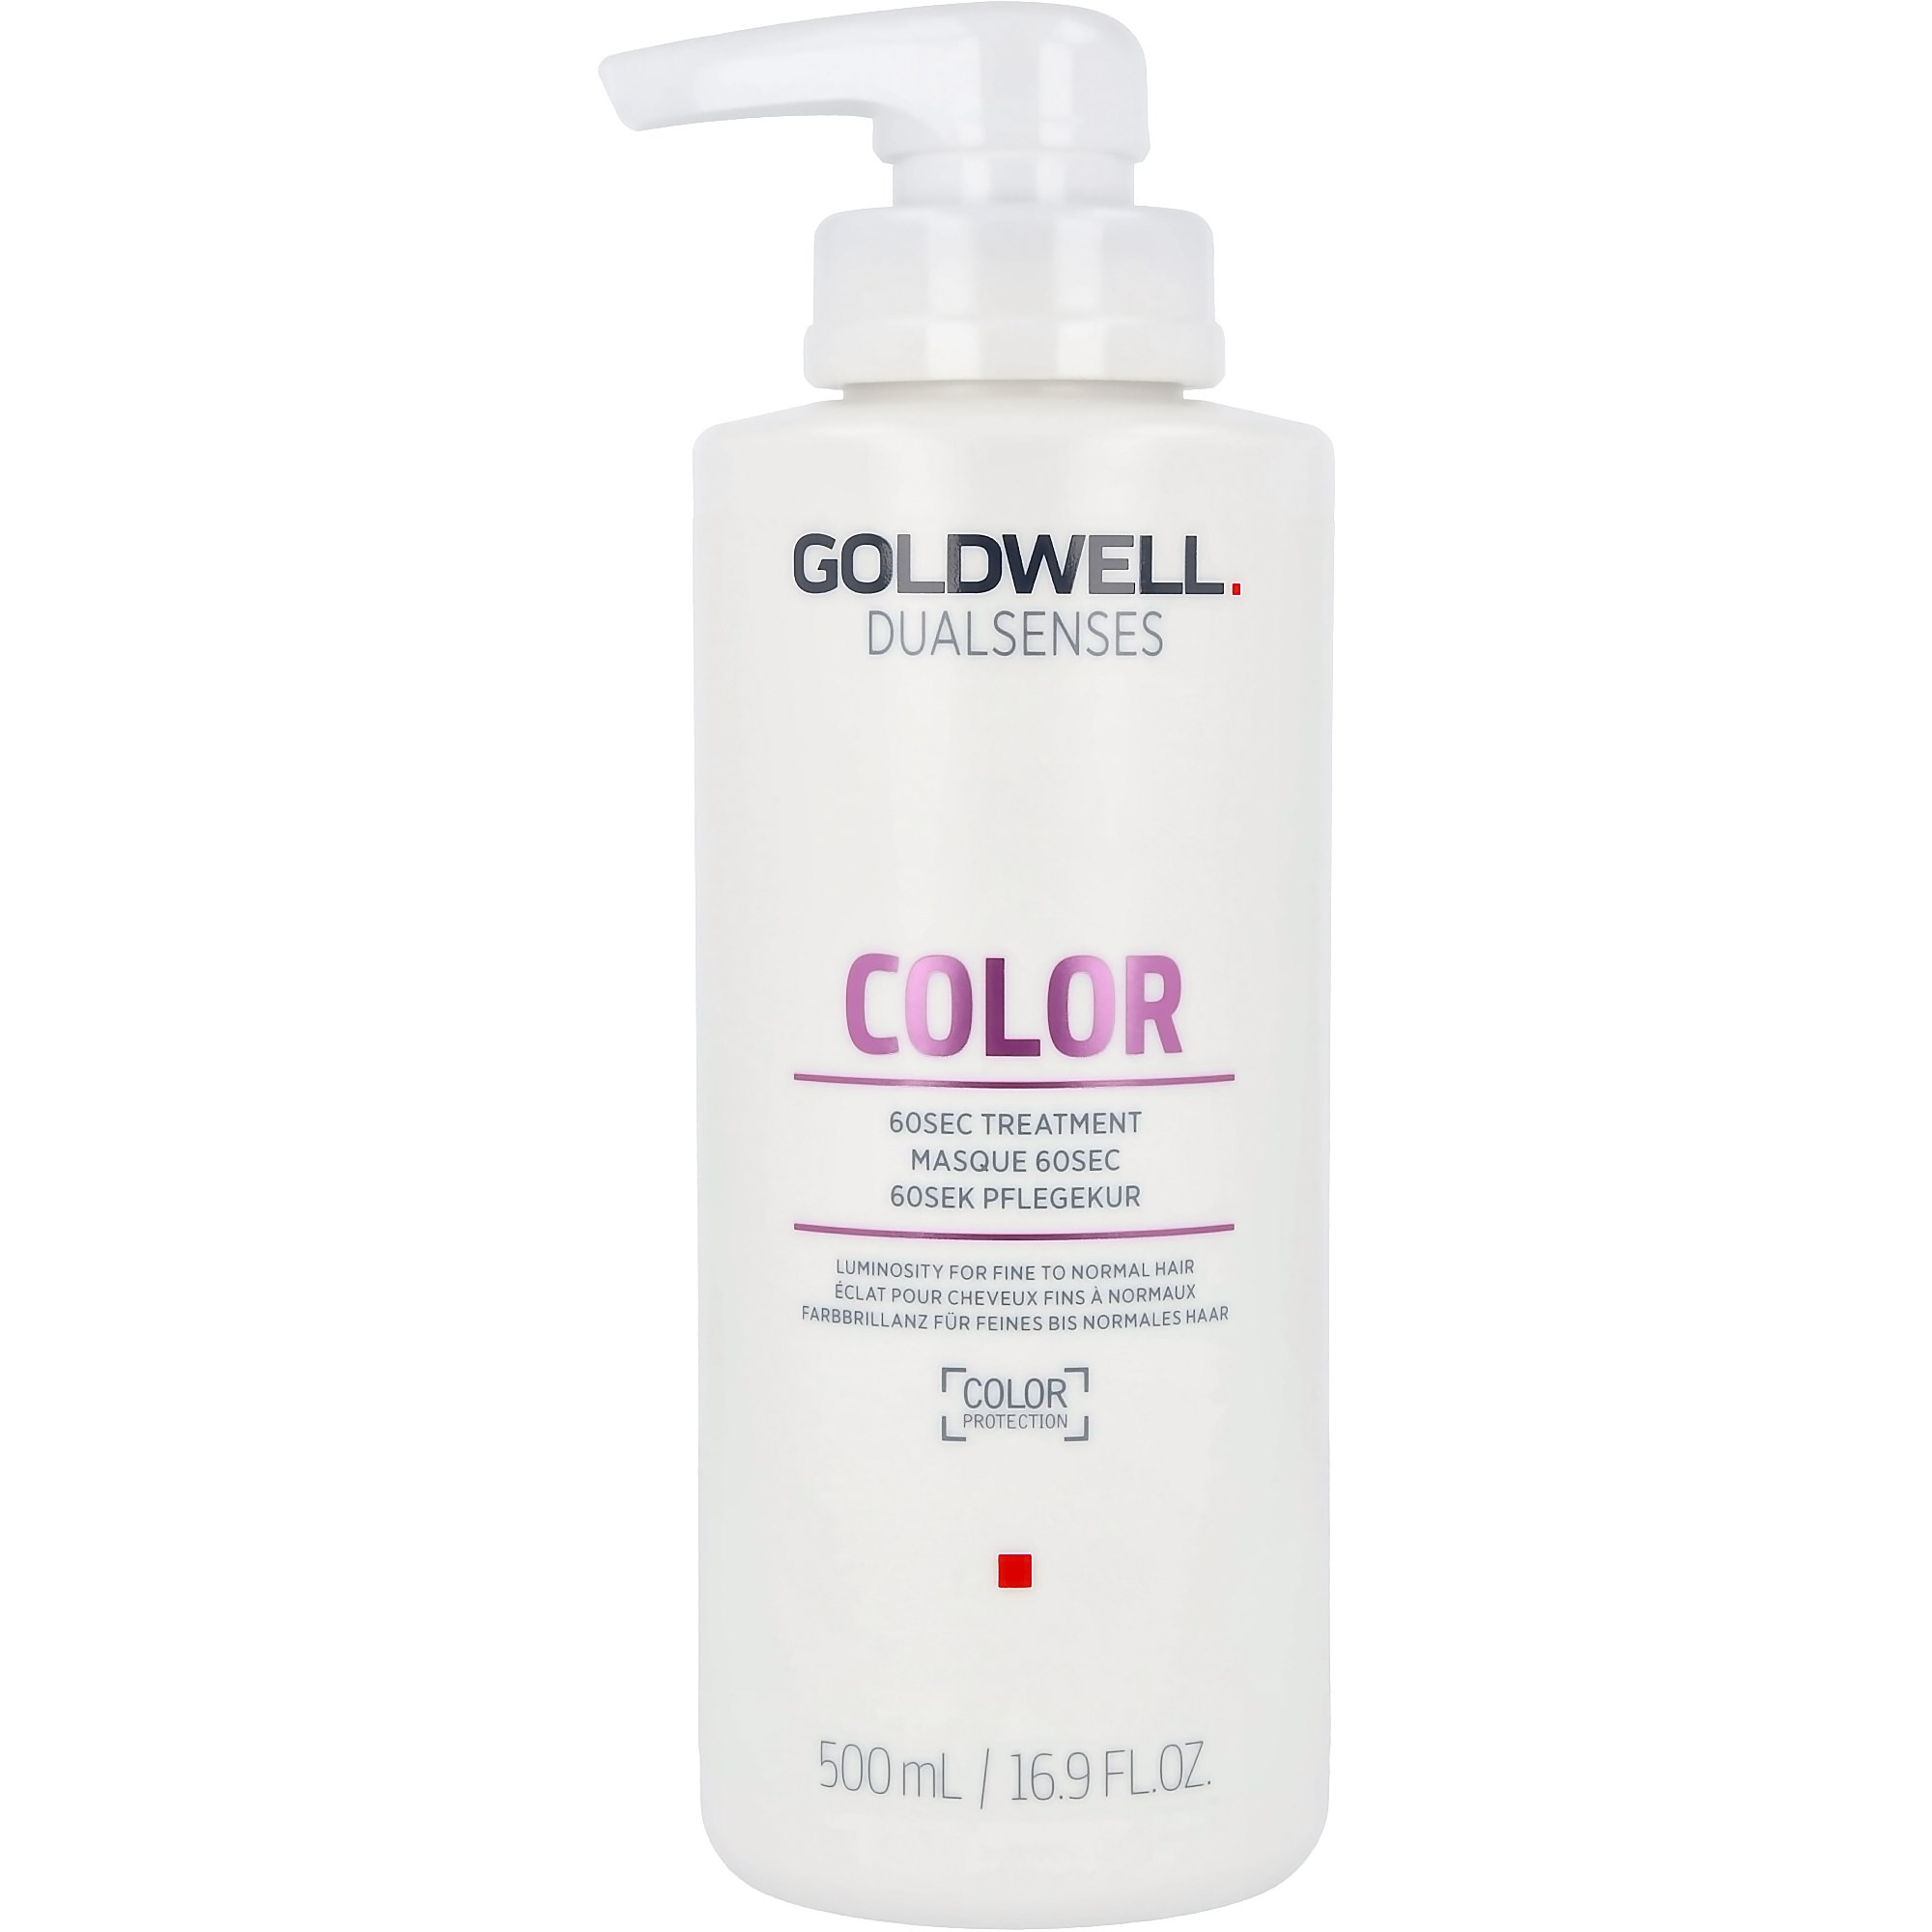 Goldwell Dualsenses Color 60sec Treatment 500ml